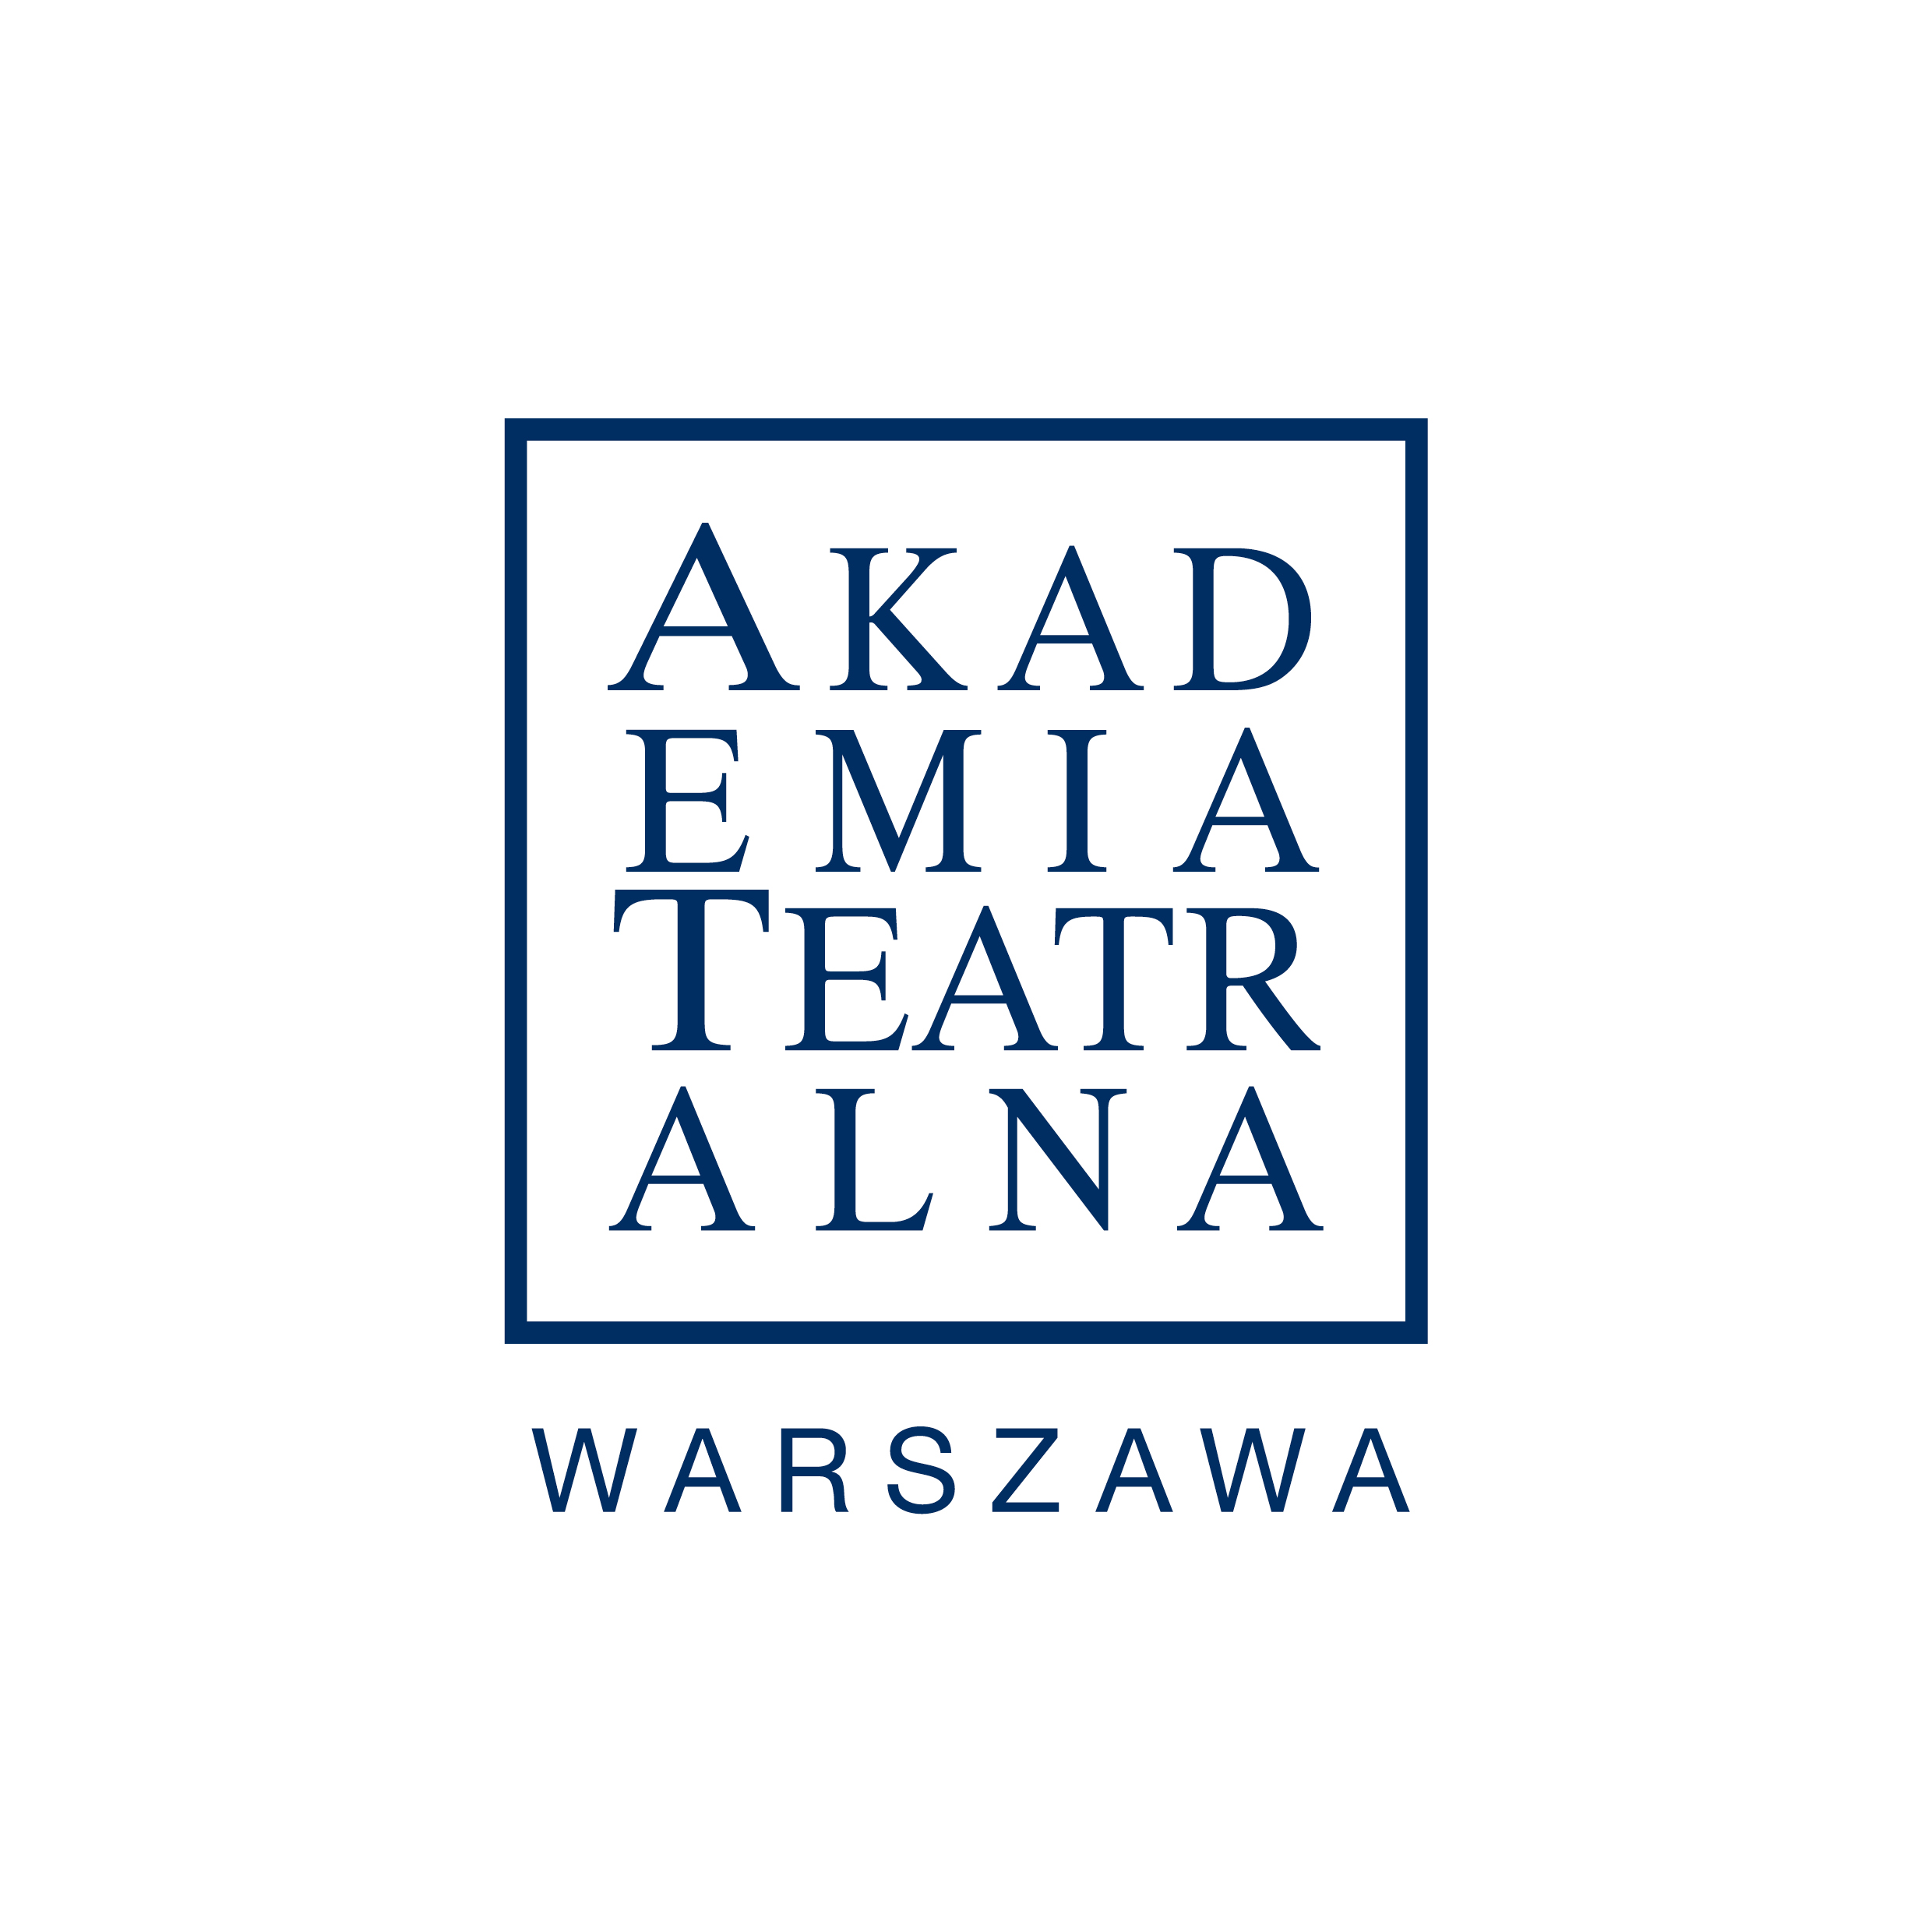 Logotyp Akademia Teatralna Warszawa